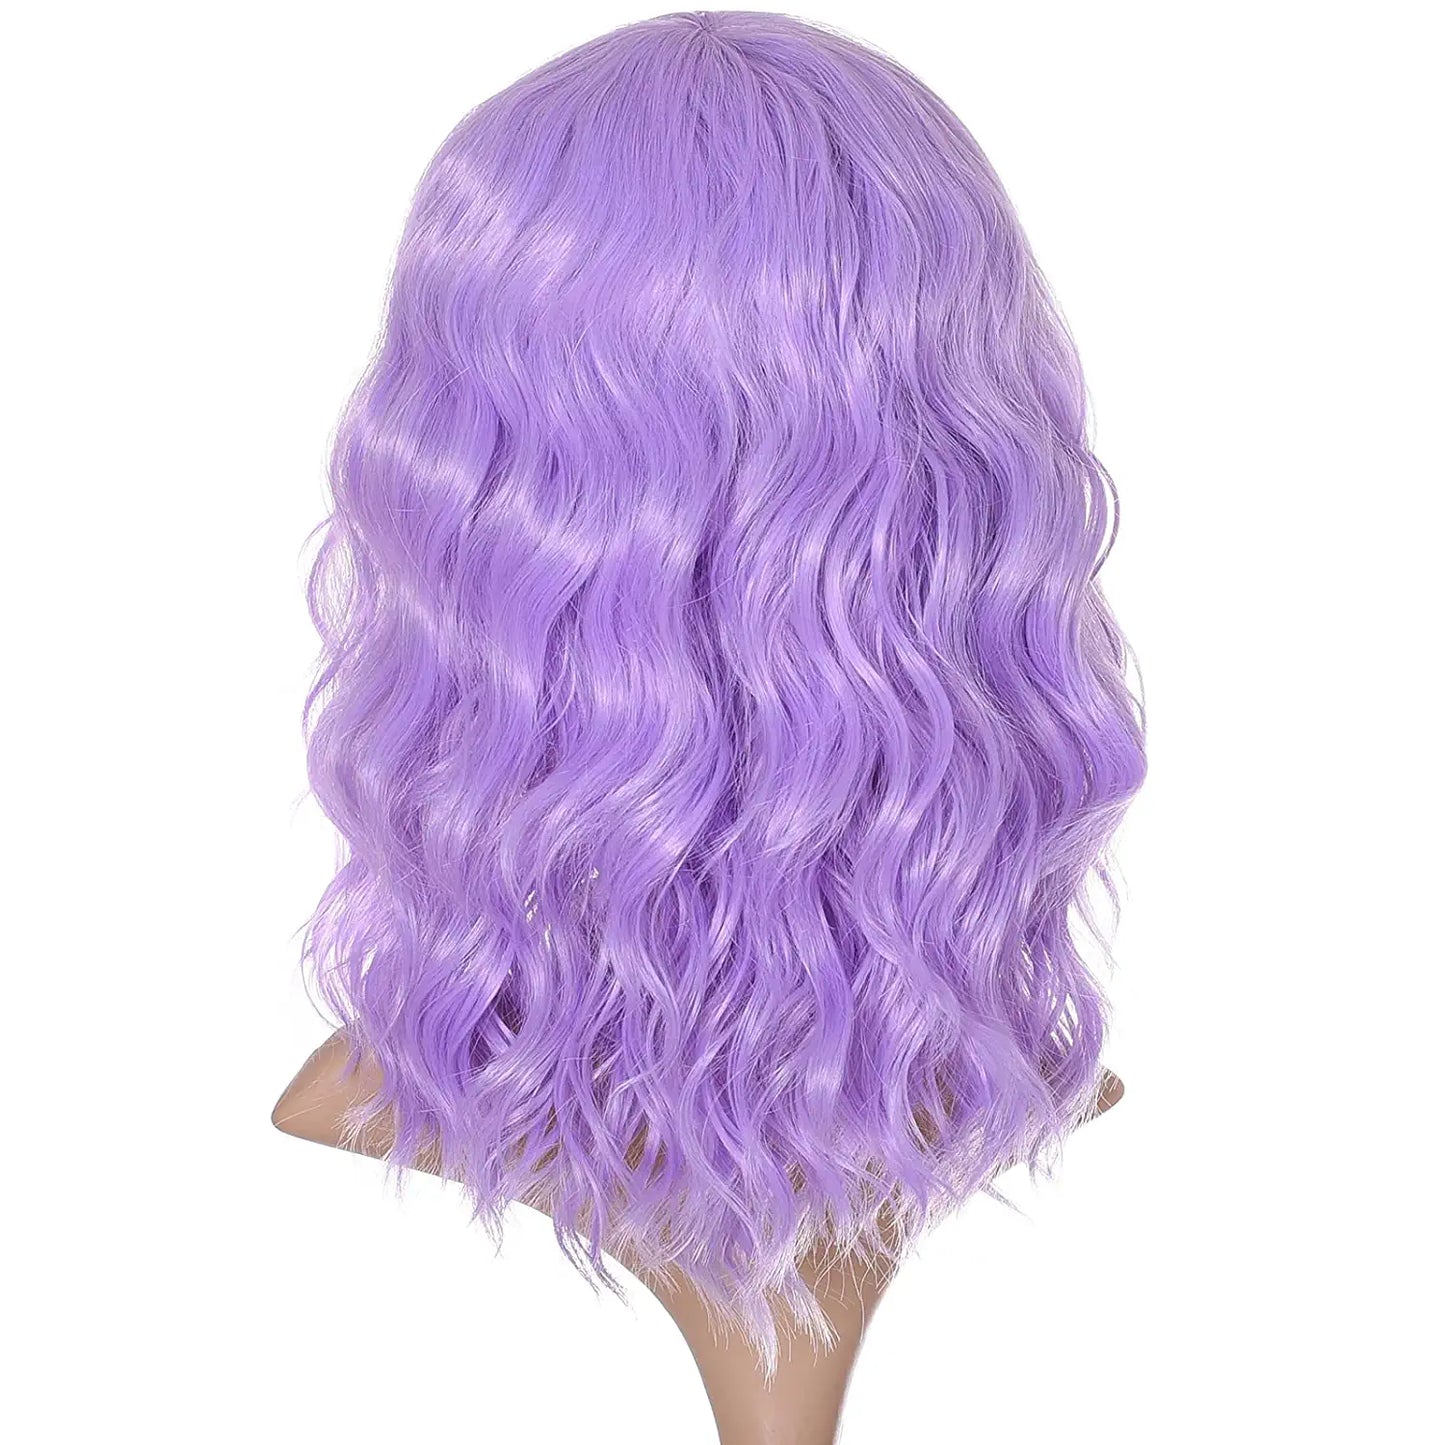 Short Bob Wavy Lavender Purple Hair Wig with Bang